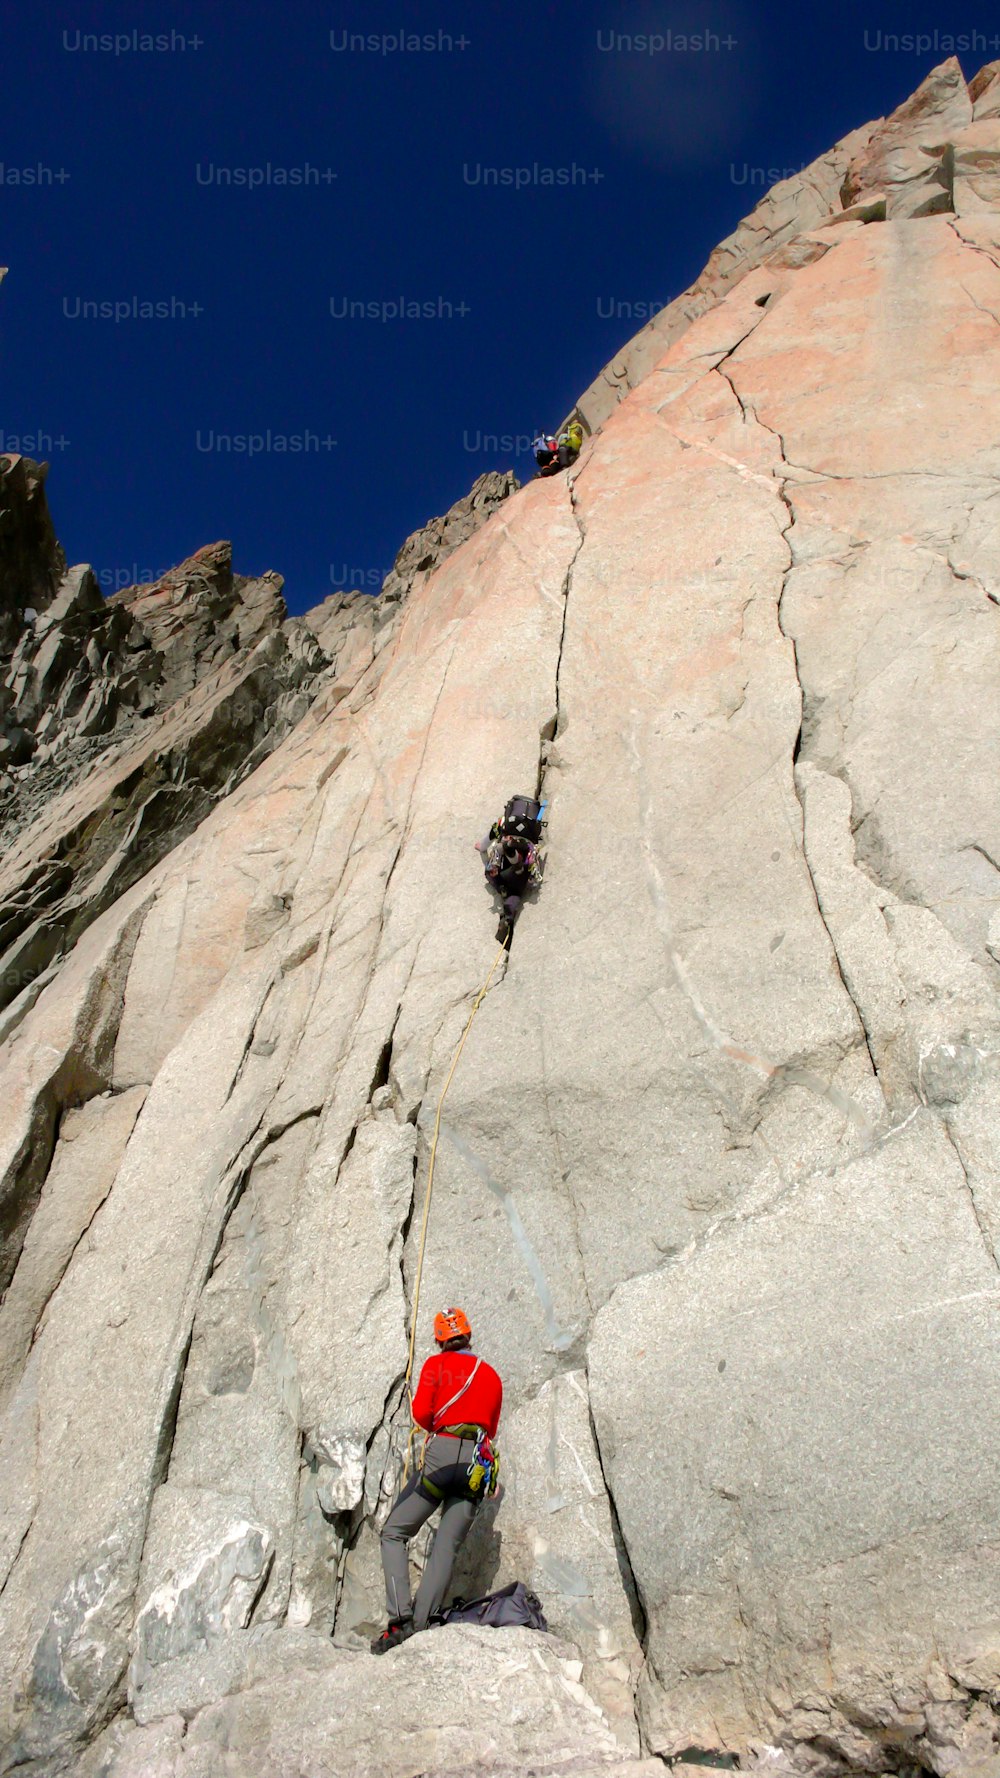 dois alpinistas em uma rota difícil em uma parede de granito vertical nos Alpes franceses perto de Chamonix sob um céu azul